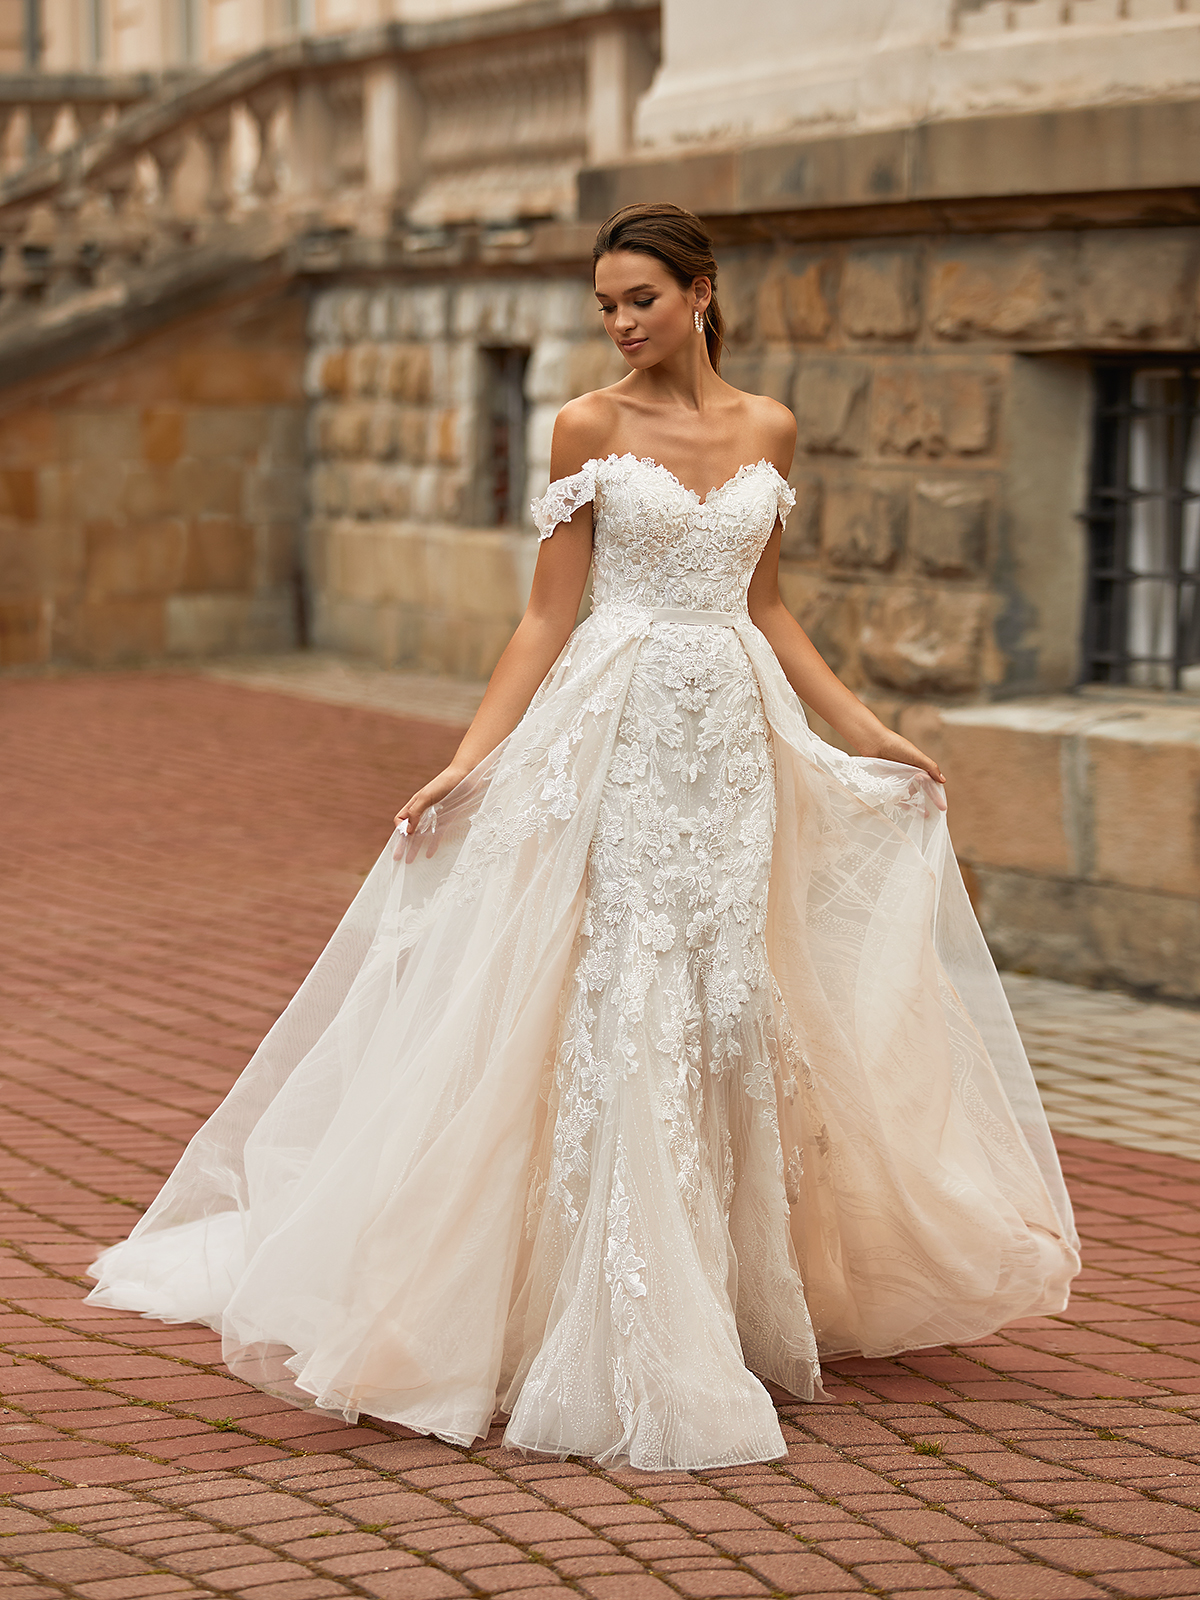 Long-sleeve wedding dress idea - lace, ball gown wedding dress with  v-neckline. Style … | Wedding dress long sleeve, Ball gown wedding dress,  Gorgeous wedding dress